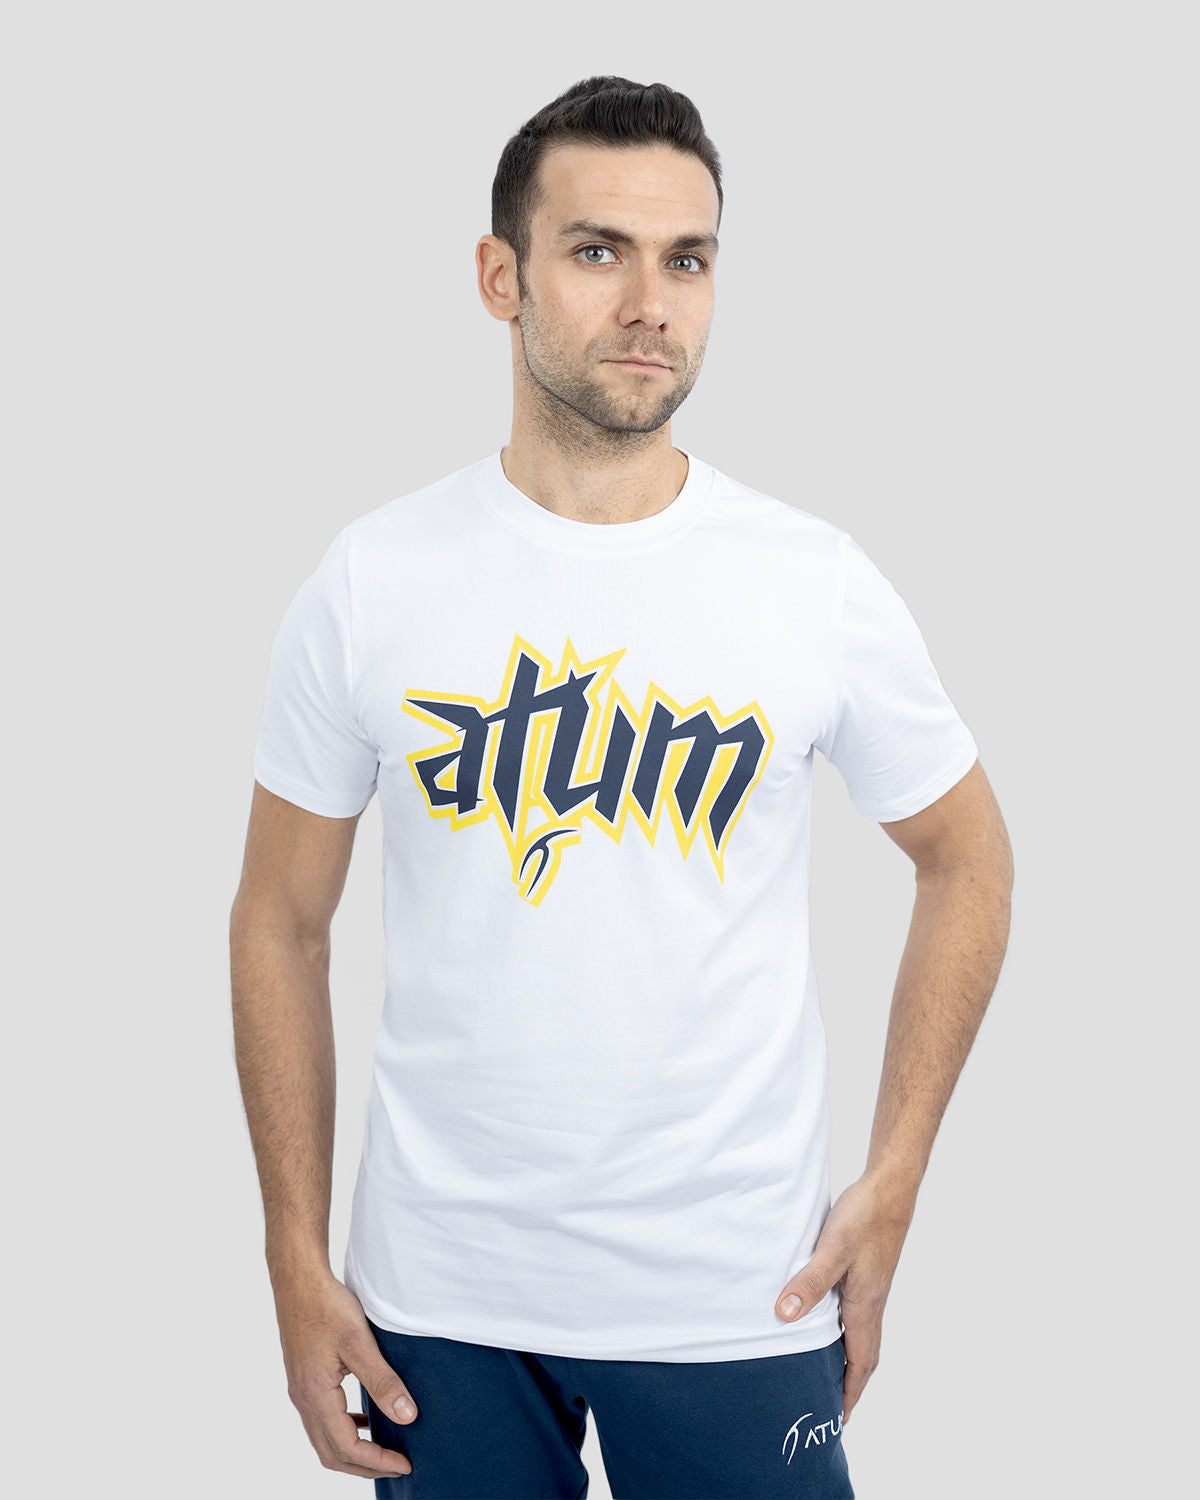 Atum Men's Graphic Logo T-Shirt